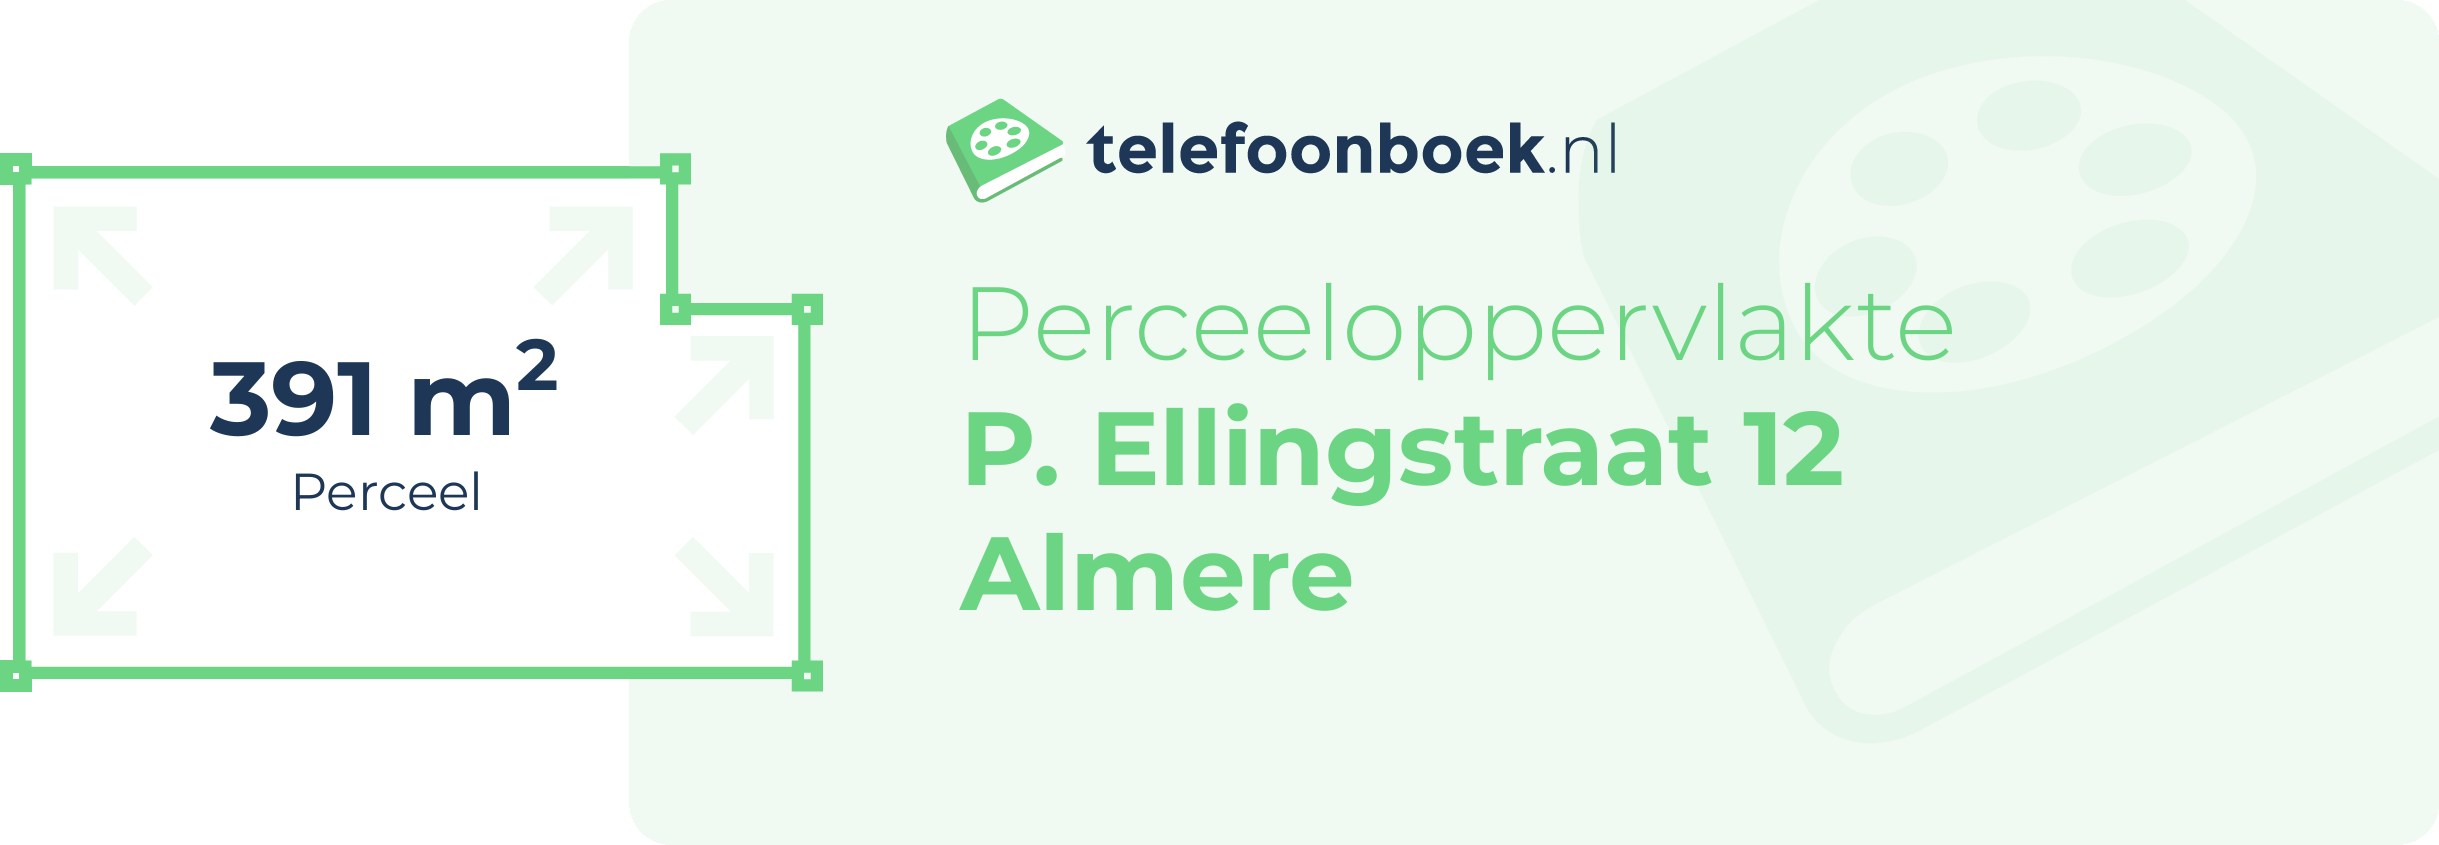 Perceeloppervlakte P. Ellingstraat 12 Almere